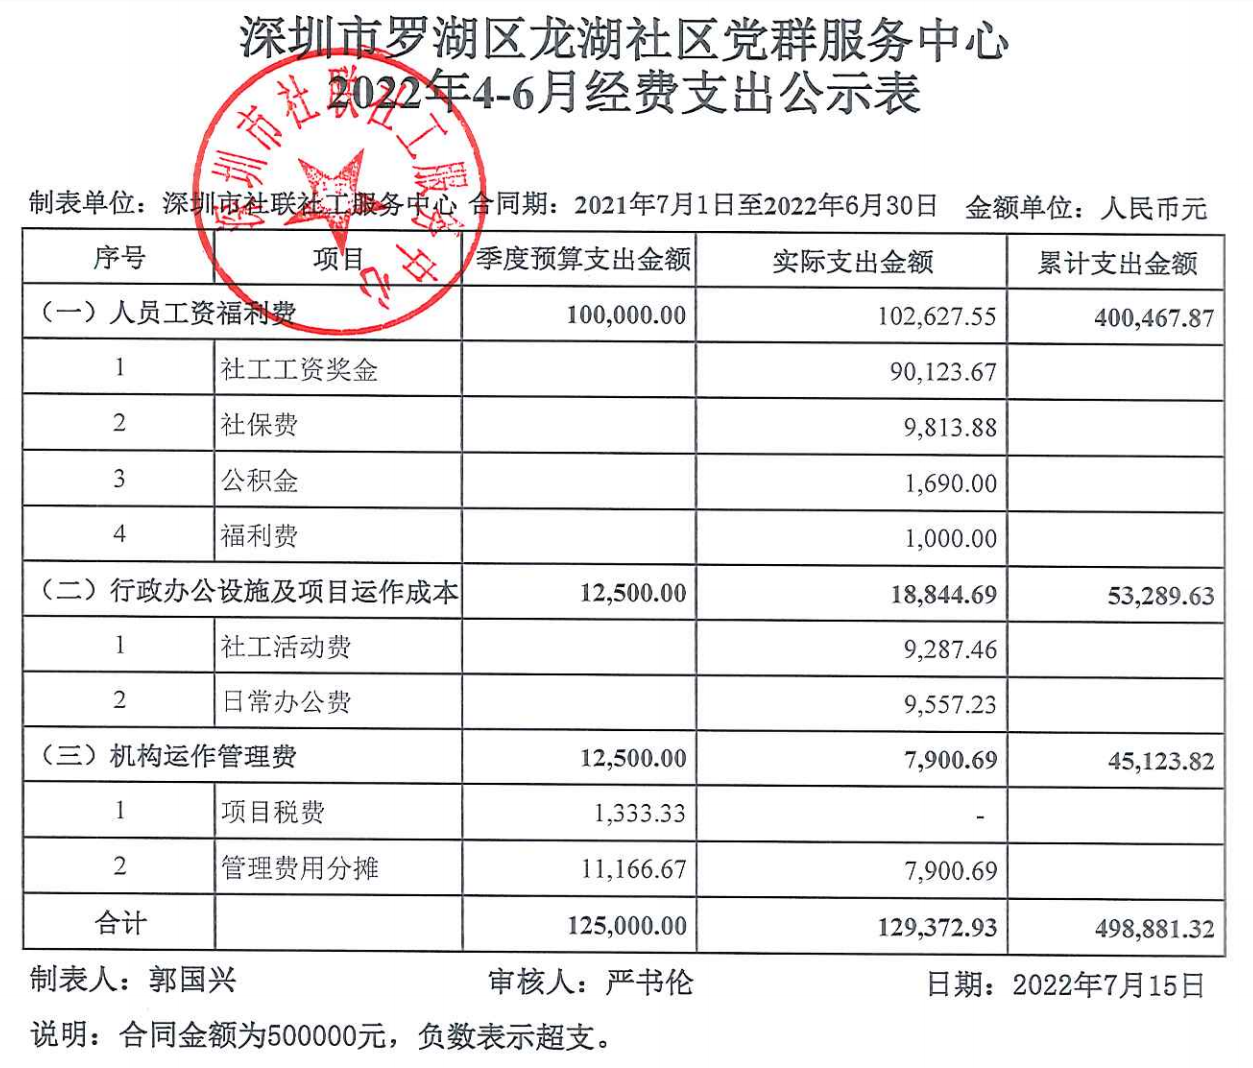 龙湖社区2022年4-6月财务公示表